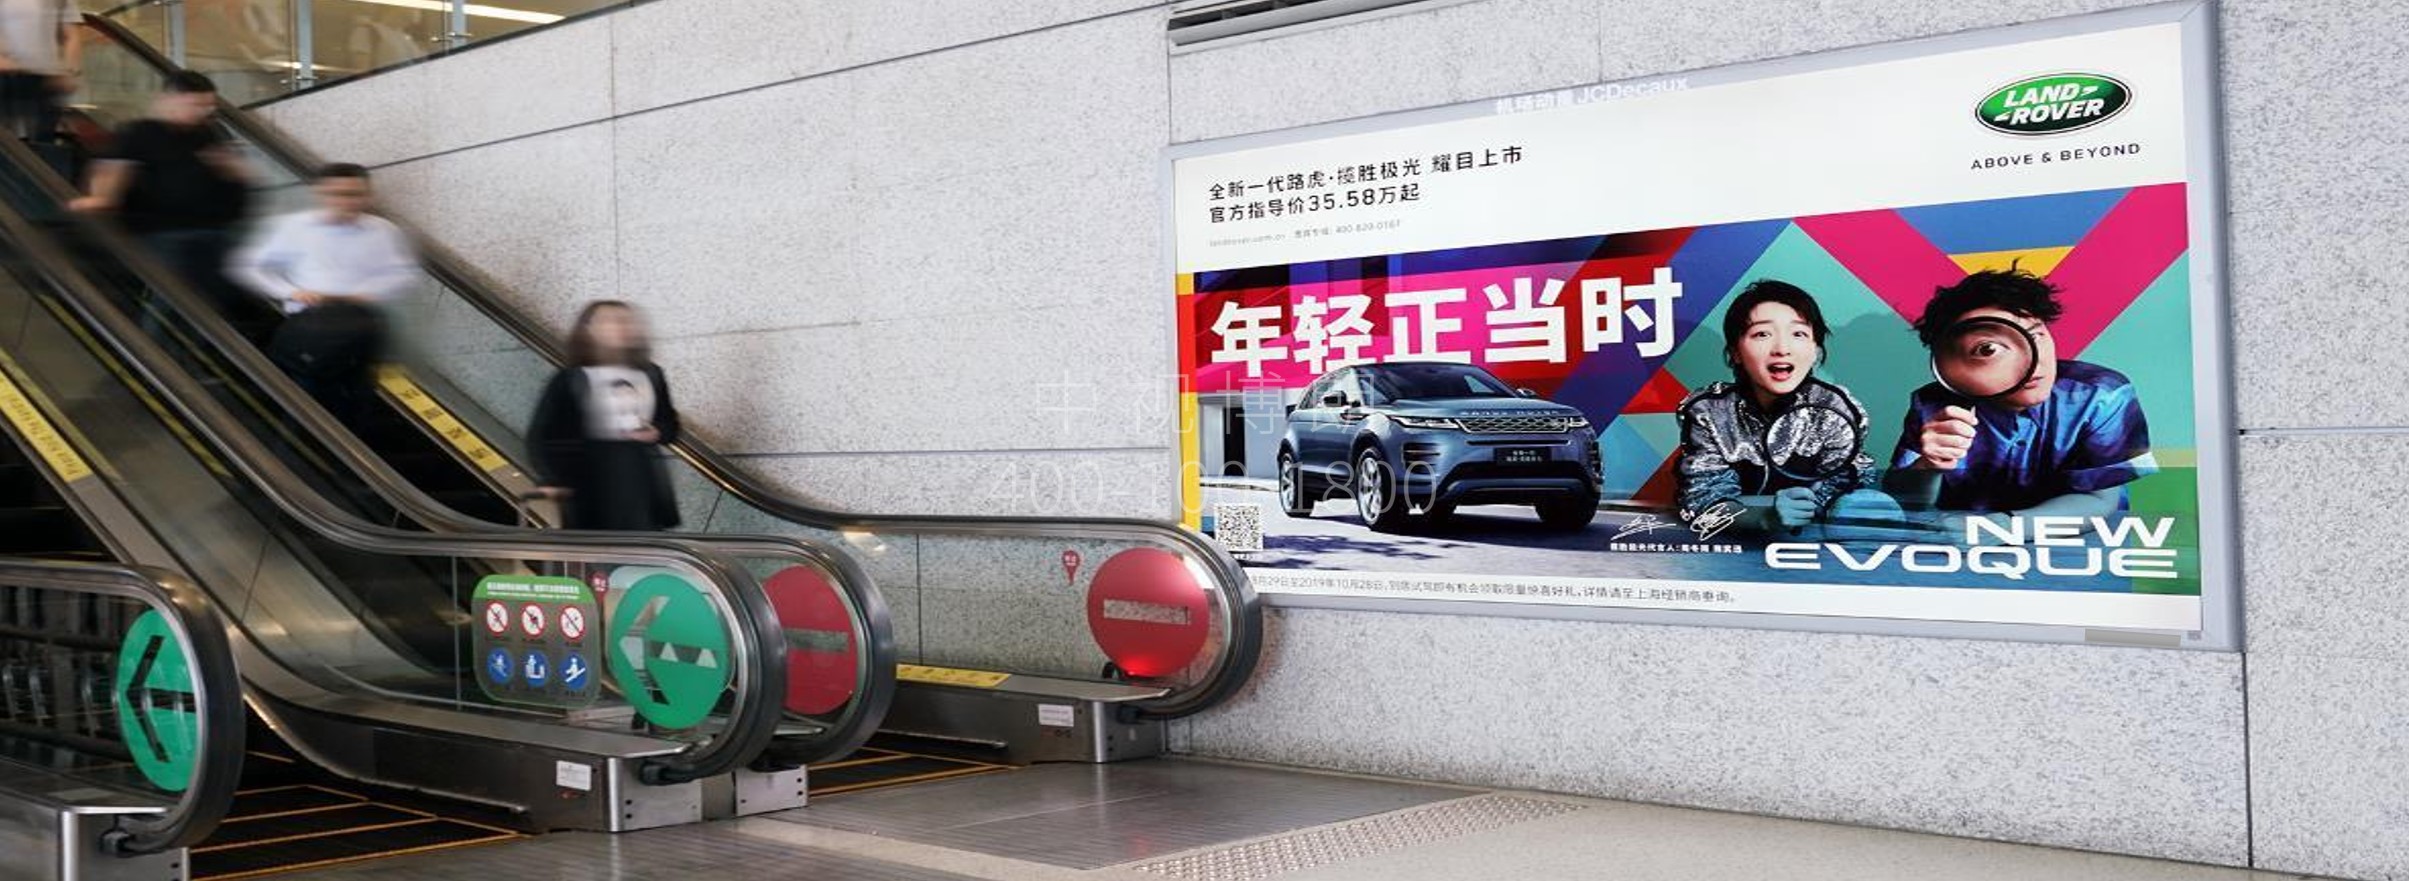 上海机场广告-虹桥T2候机大厅扶梯灯箱套装